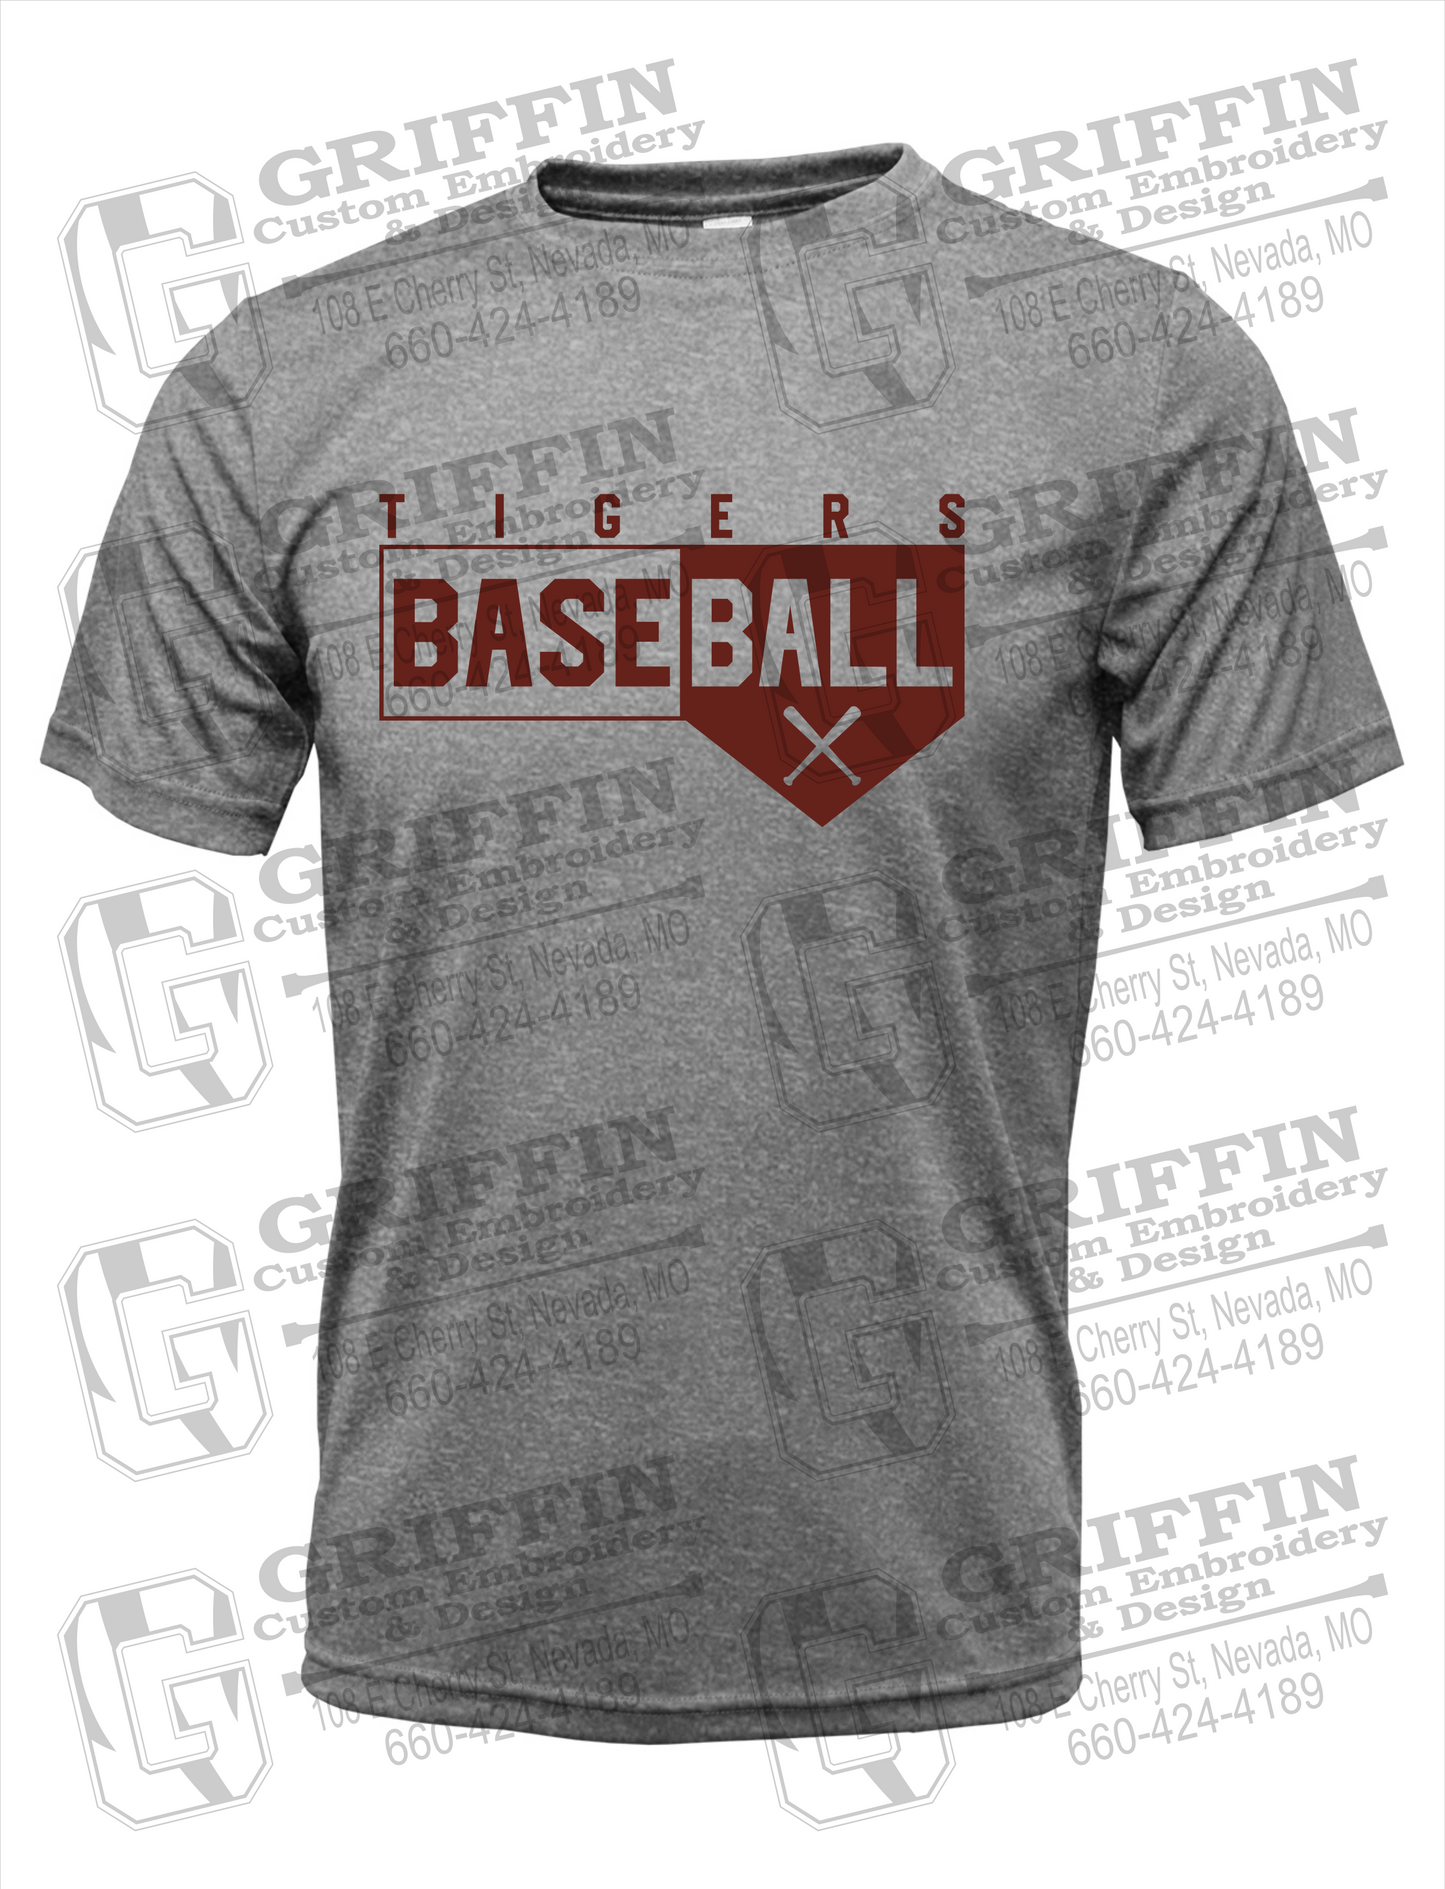 Nevada Tigers 24-X Dry-Fit T-Shirt - Baseball